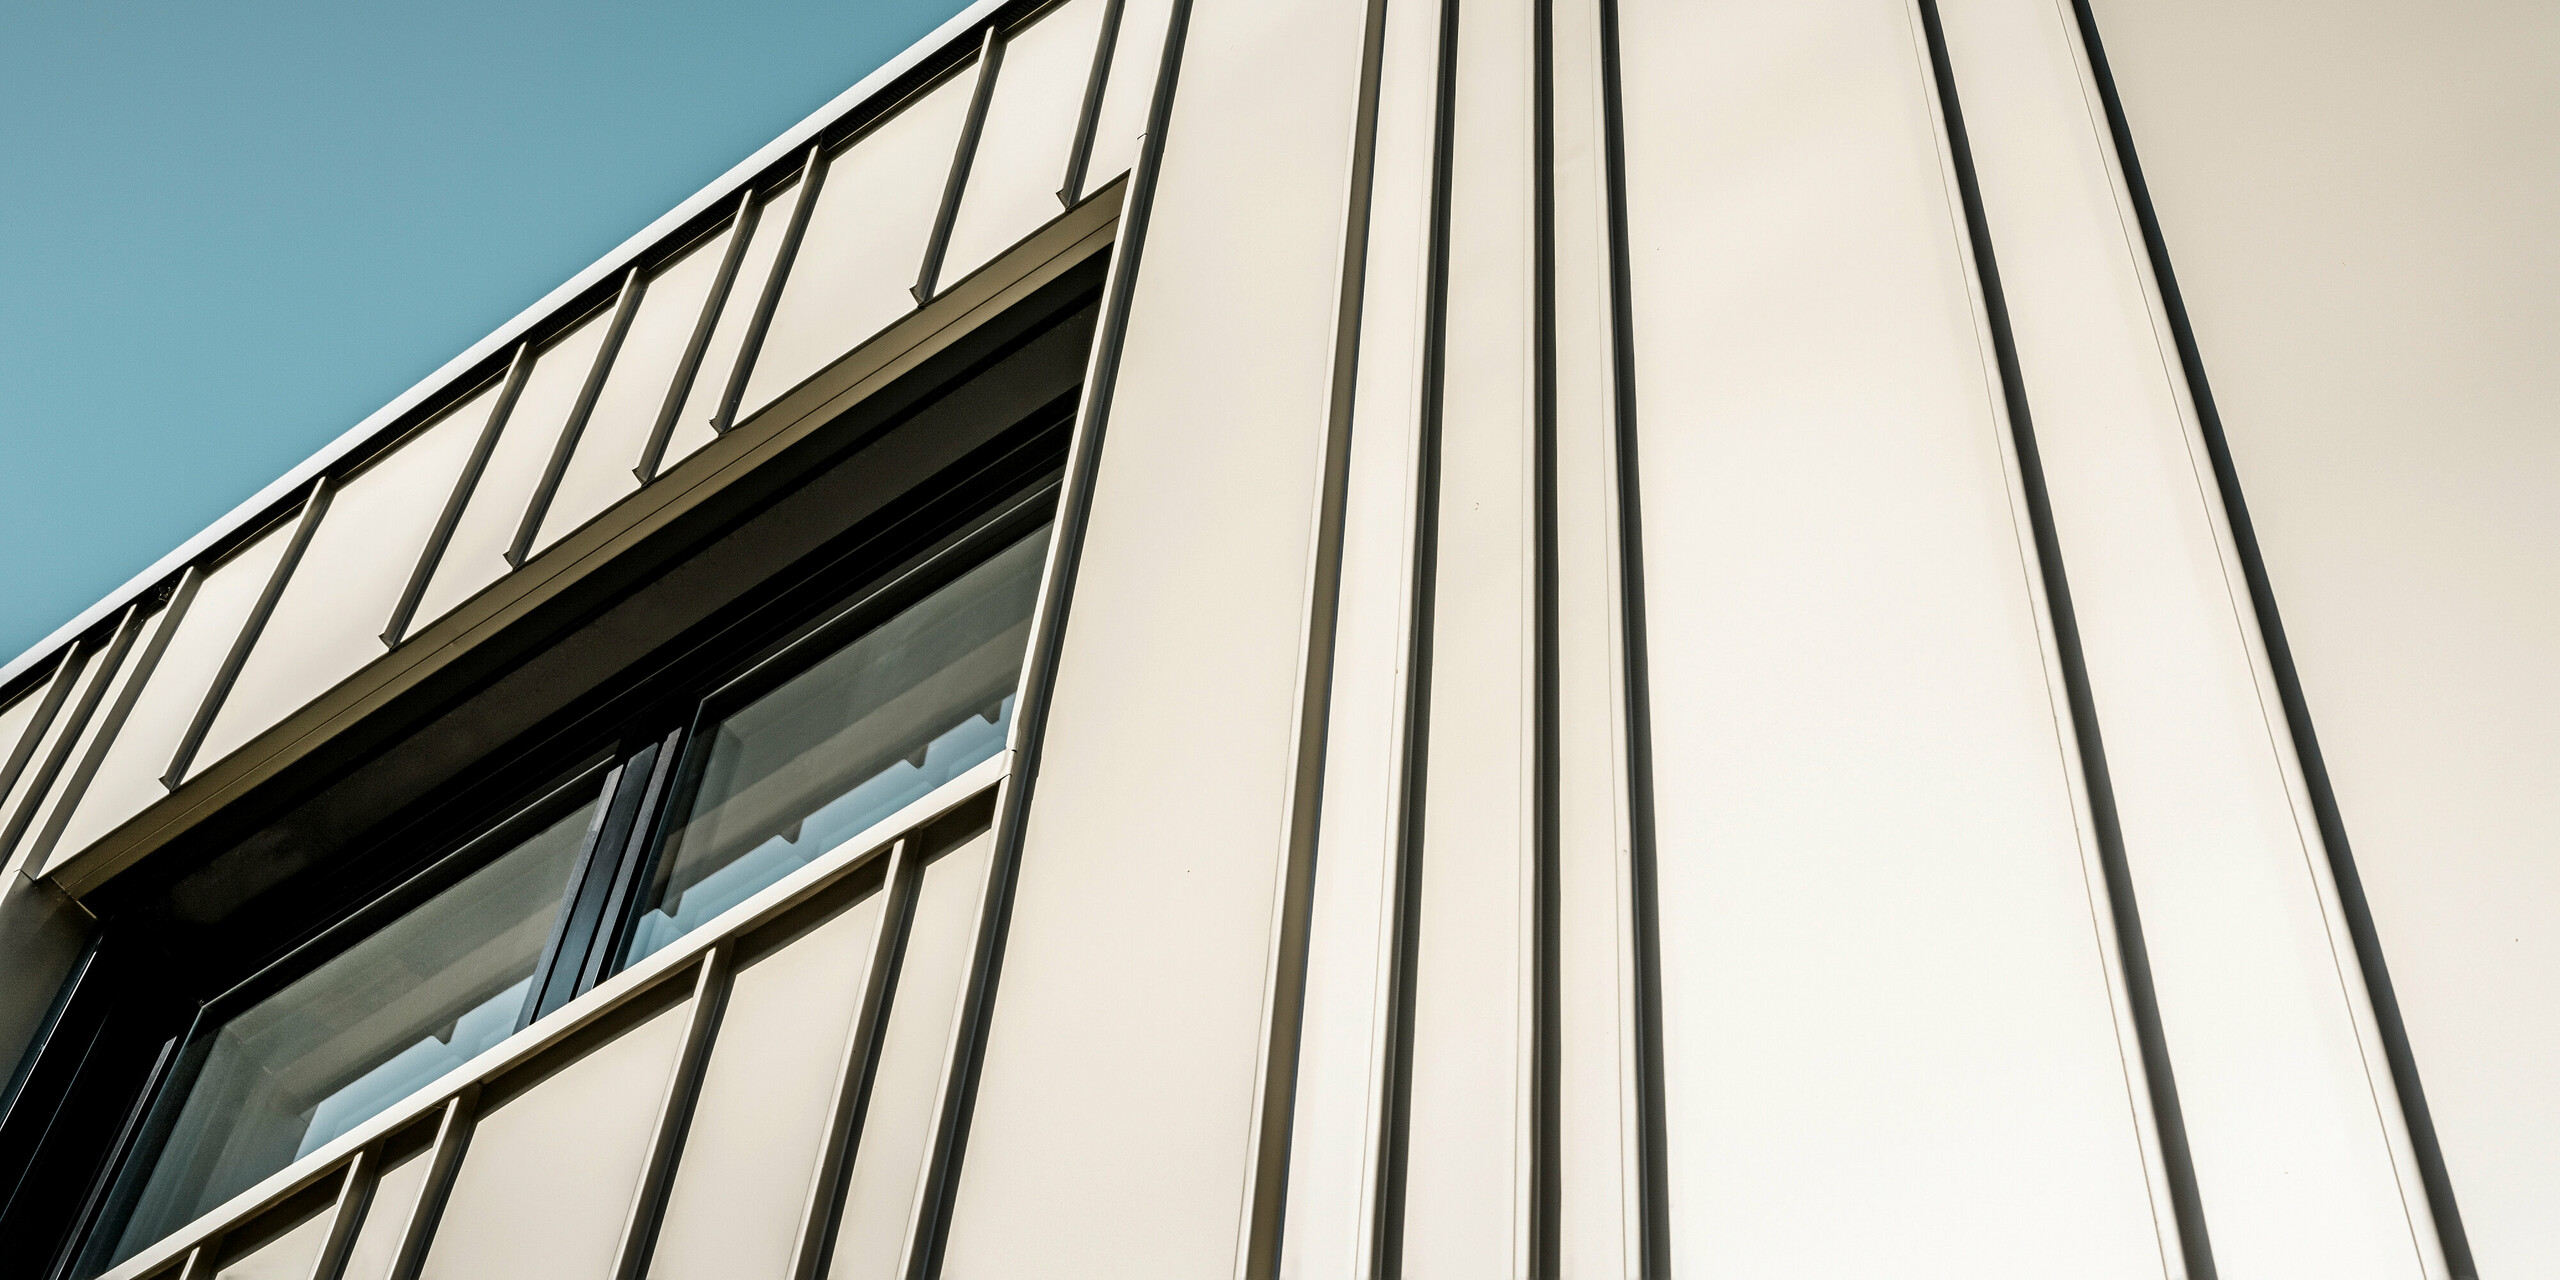 Nahaufnahme einer modernen PREFA Aluminiumfassade in Lichtbronze. Für die Winkelstehfalzfassade wurde FALZONAL in unterschiedlichen Scharenbreiten verlegt. Die Schatten der vertikalen Linien, die durch die Winkelstehfalzdeckung entstehen, heben das anspruchsvolle Design und die Präzision der Verarbeitung hervor. Das Fenster mit seiner schmalen, anthrazitfarbenen Einfassung fügt sich nahtlos in die Struktur der Fassade ein und spiegelt die Kombination aus Funktionalität, moderner Ästhetik und technischer Perfektion wider.